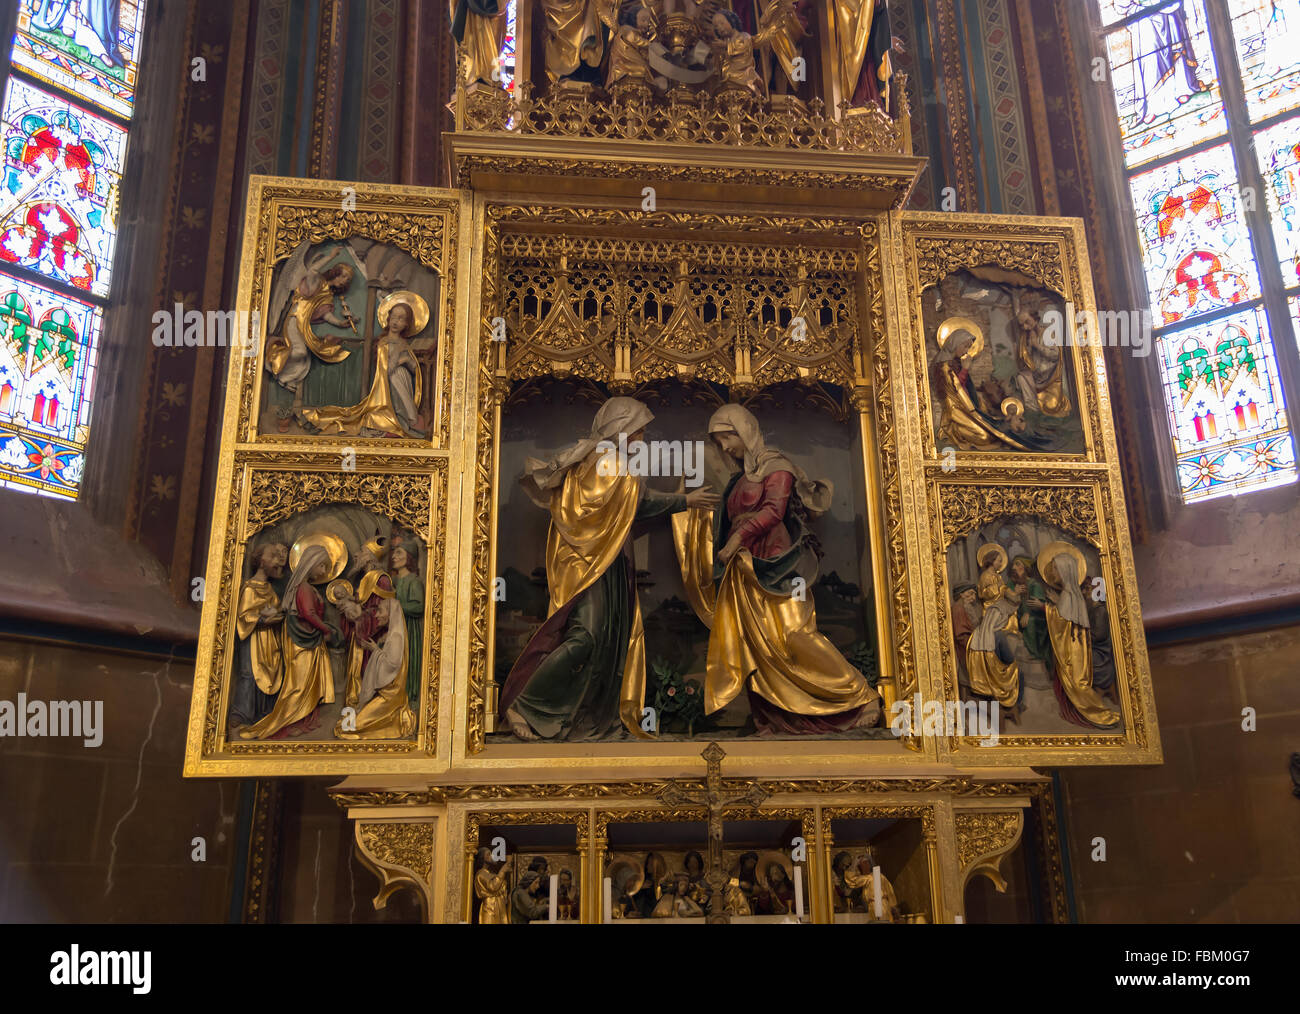 PRAGUE, 5 août : Autel de la Cathédrale des Saints Vitus, une cathédrale catholique romaine gothique fondé en 1344, le 5 août 2015 je Banque D'Images